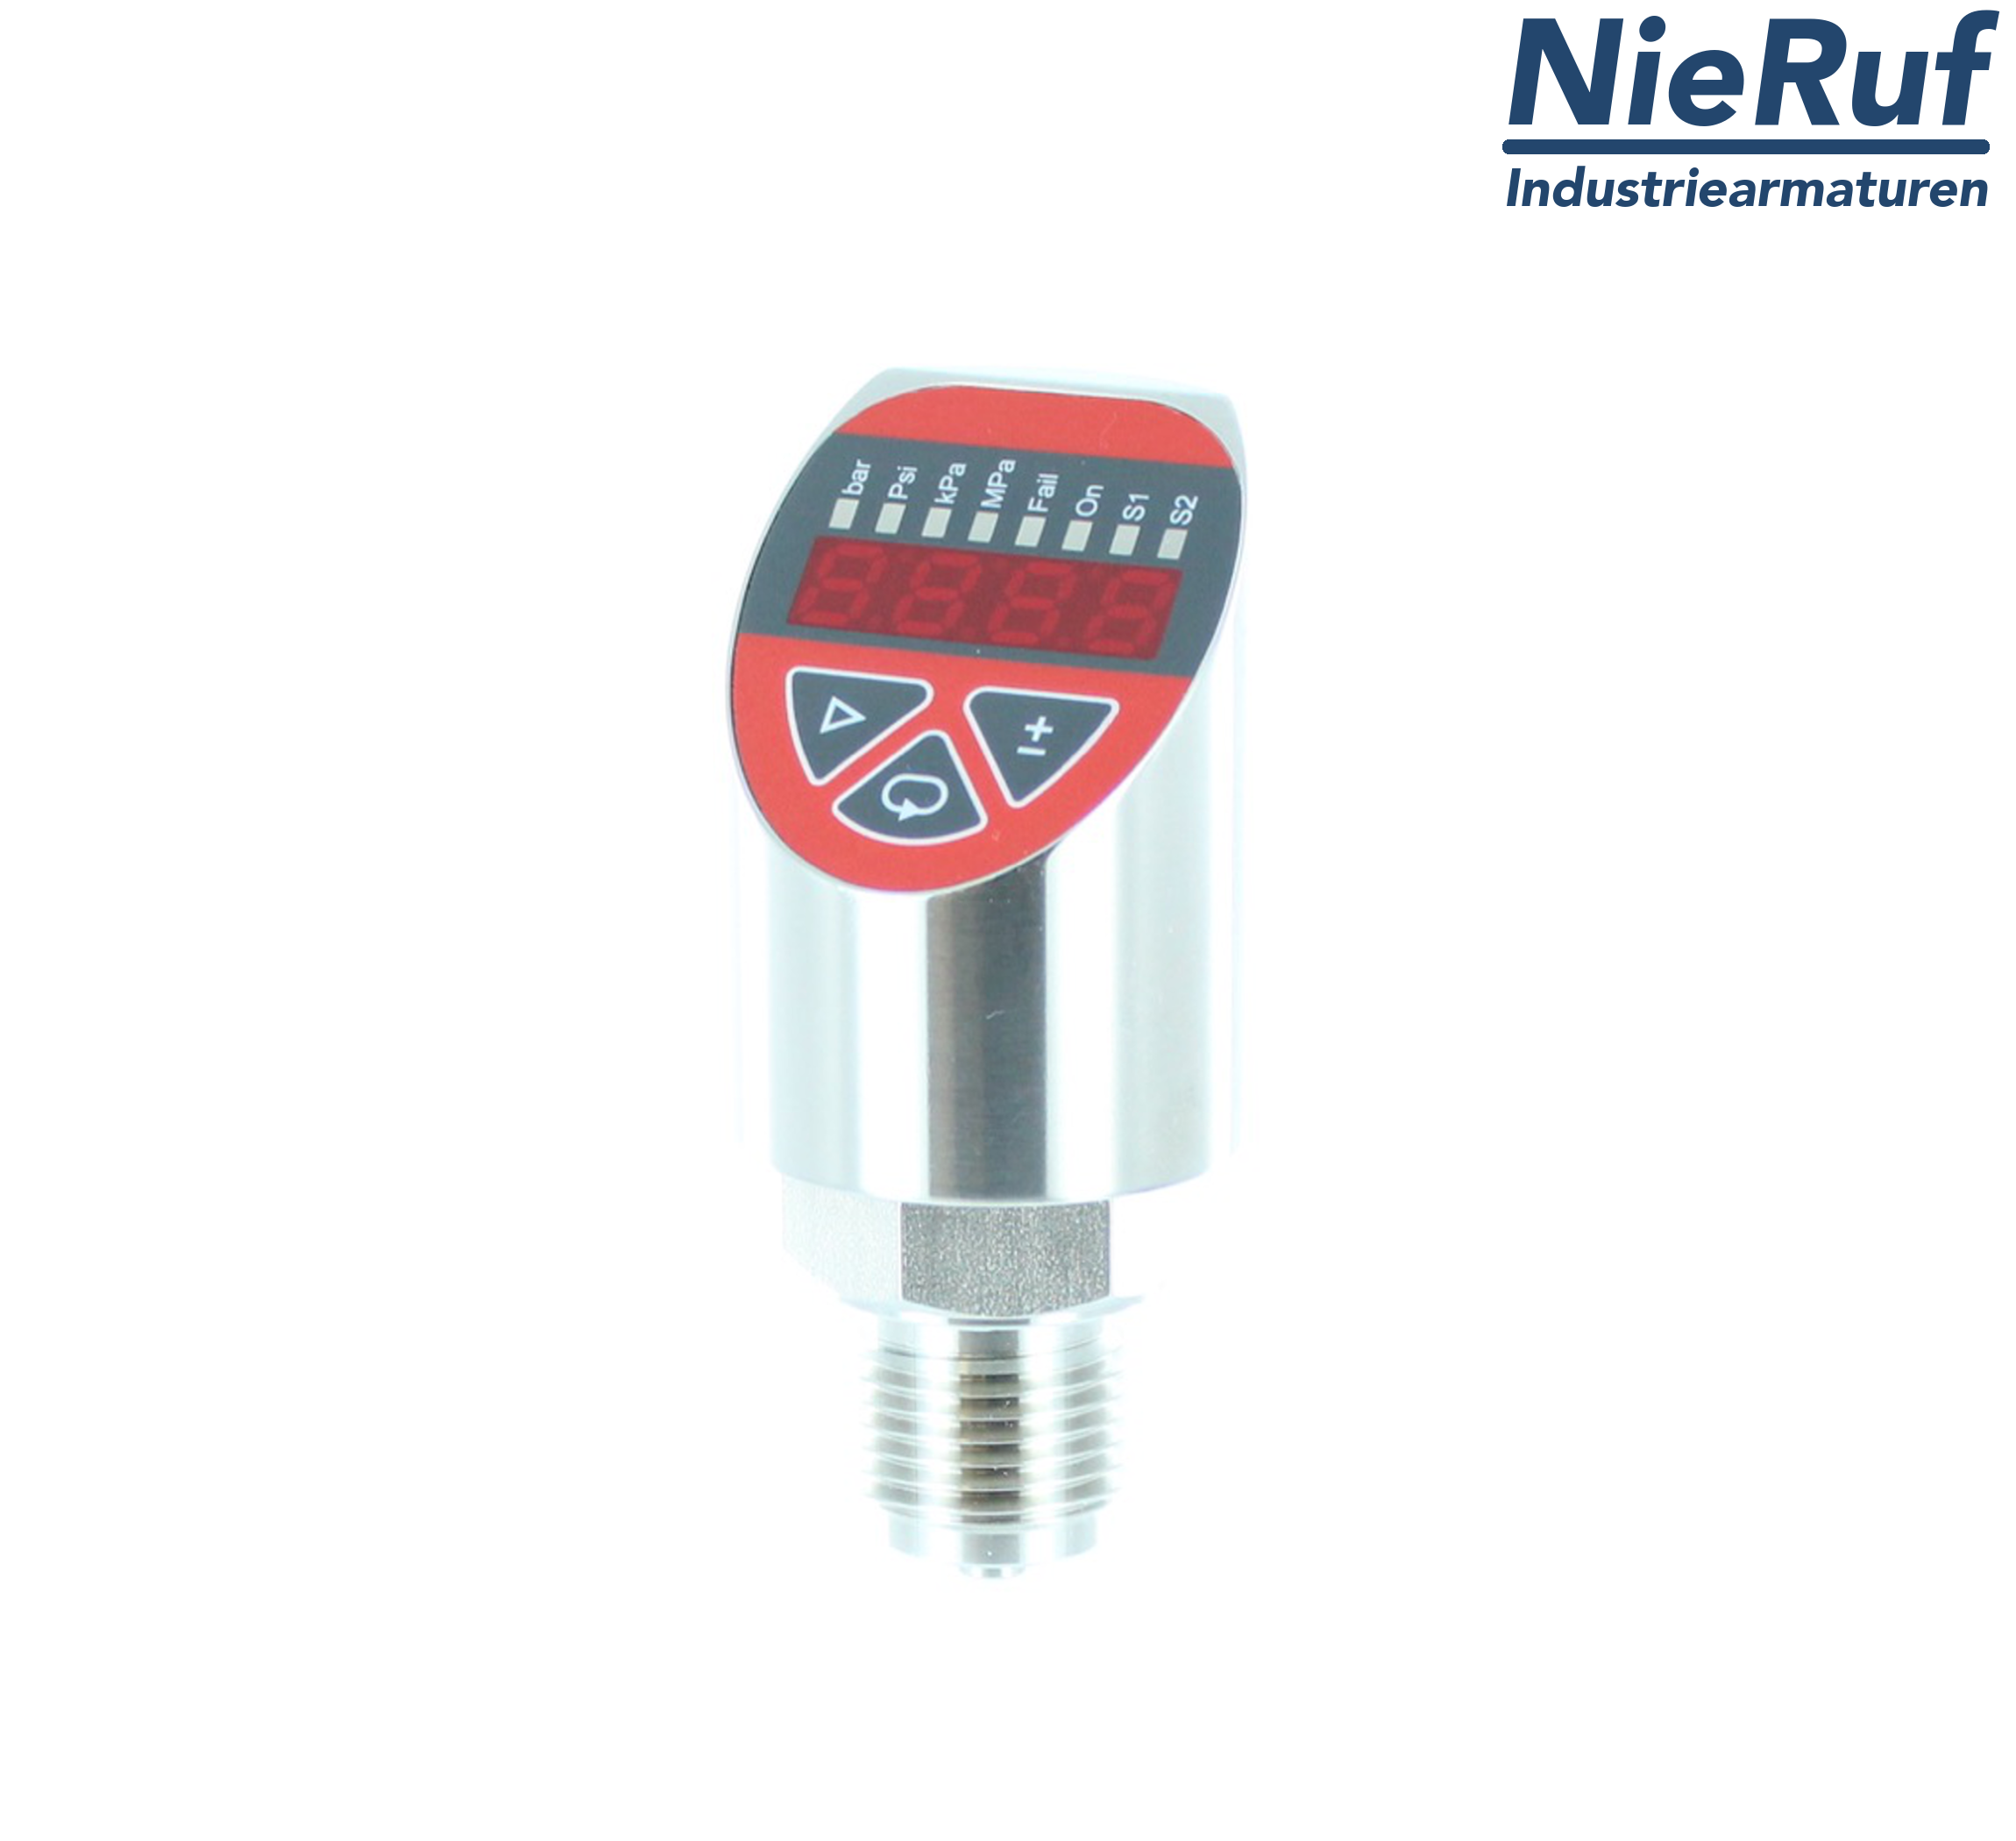 digital pressure sensor G 1/2" B IB 5-wire: 2xPNP, 1x4 - 20mA FPM 0,0 - 250,0 bar